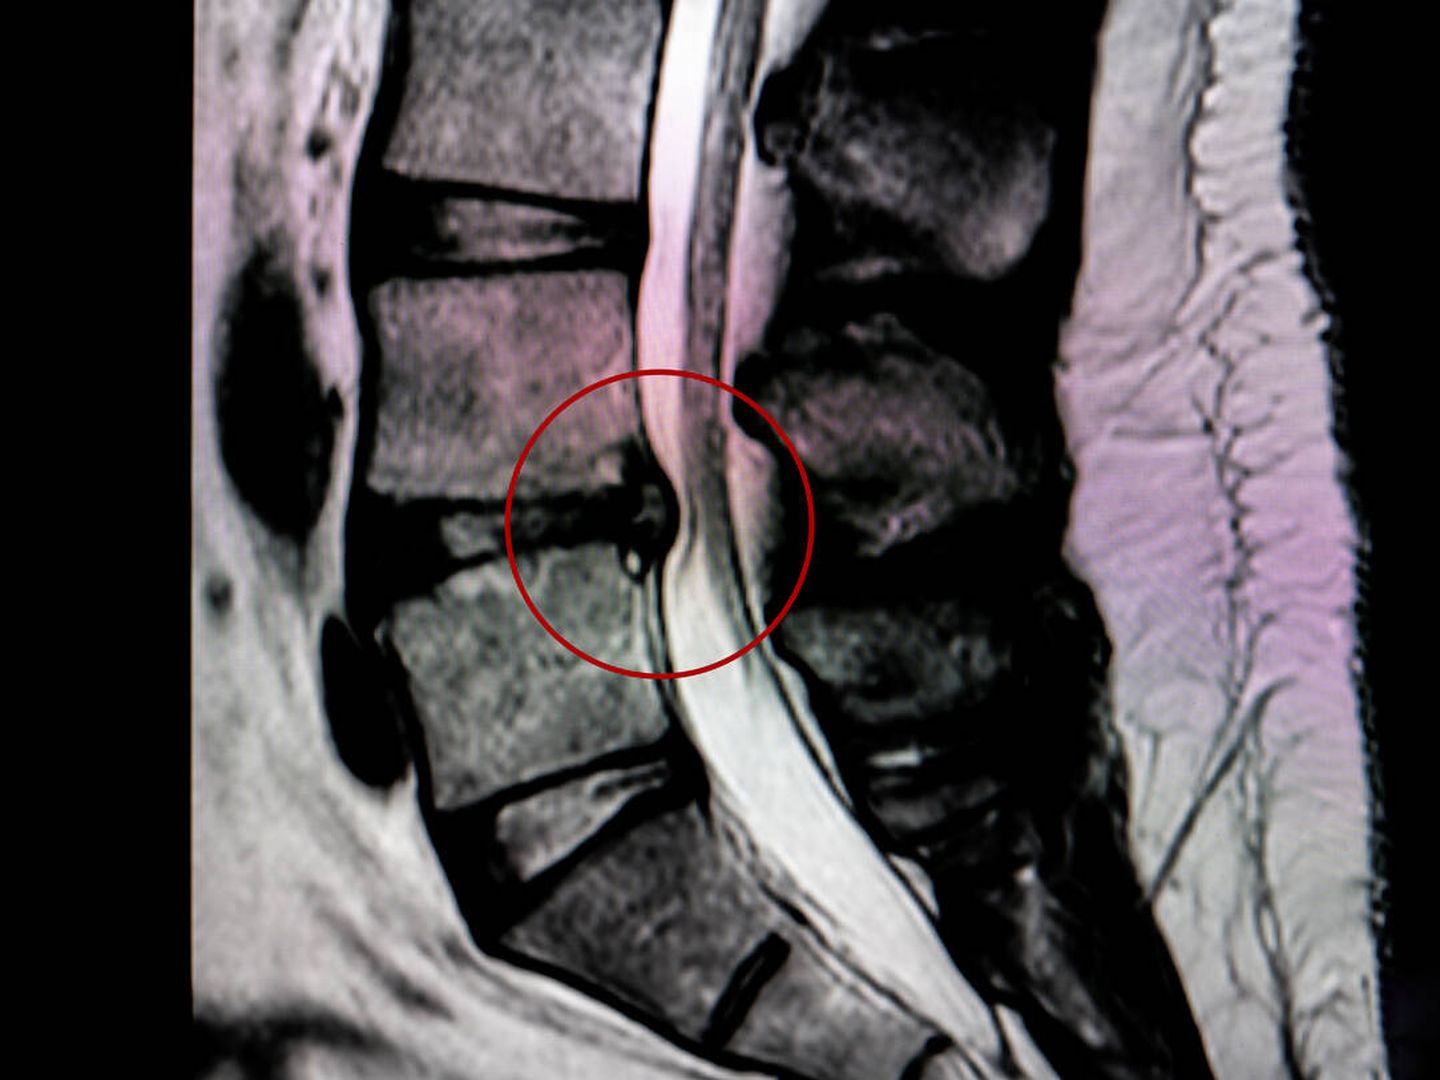 La resonancia magnética muestra una hernia entre las vértebras lumbares 4 y 5 (Foto: iStock)